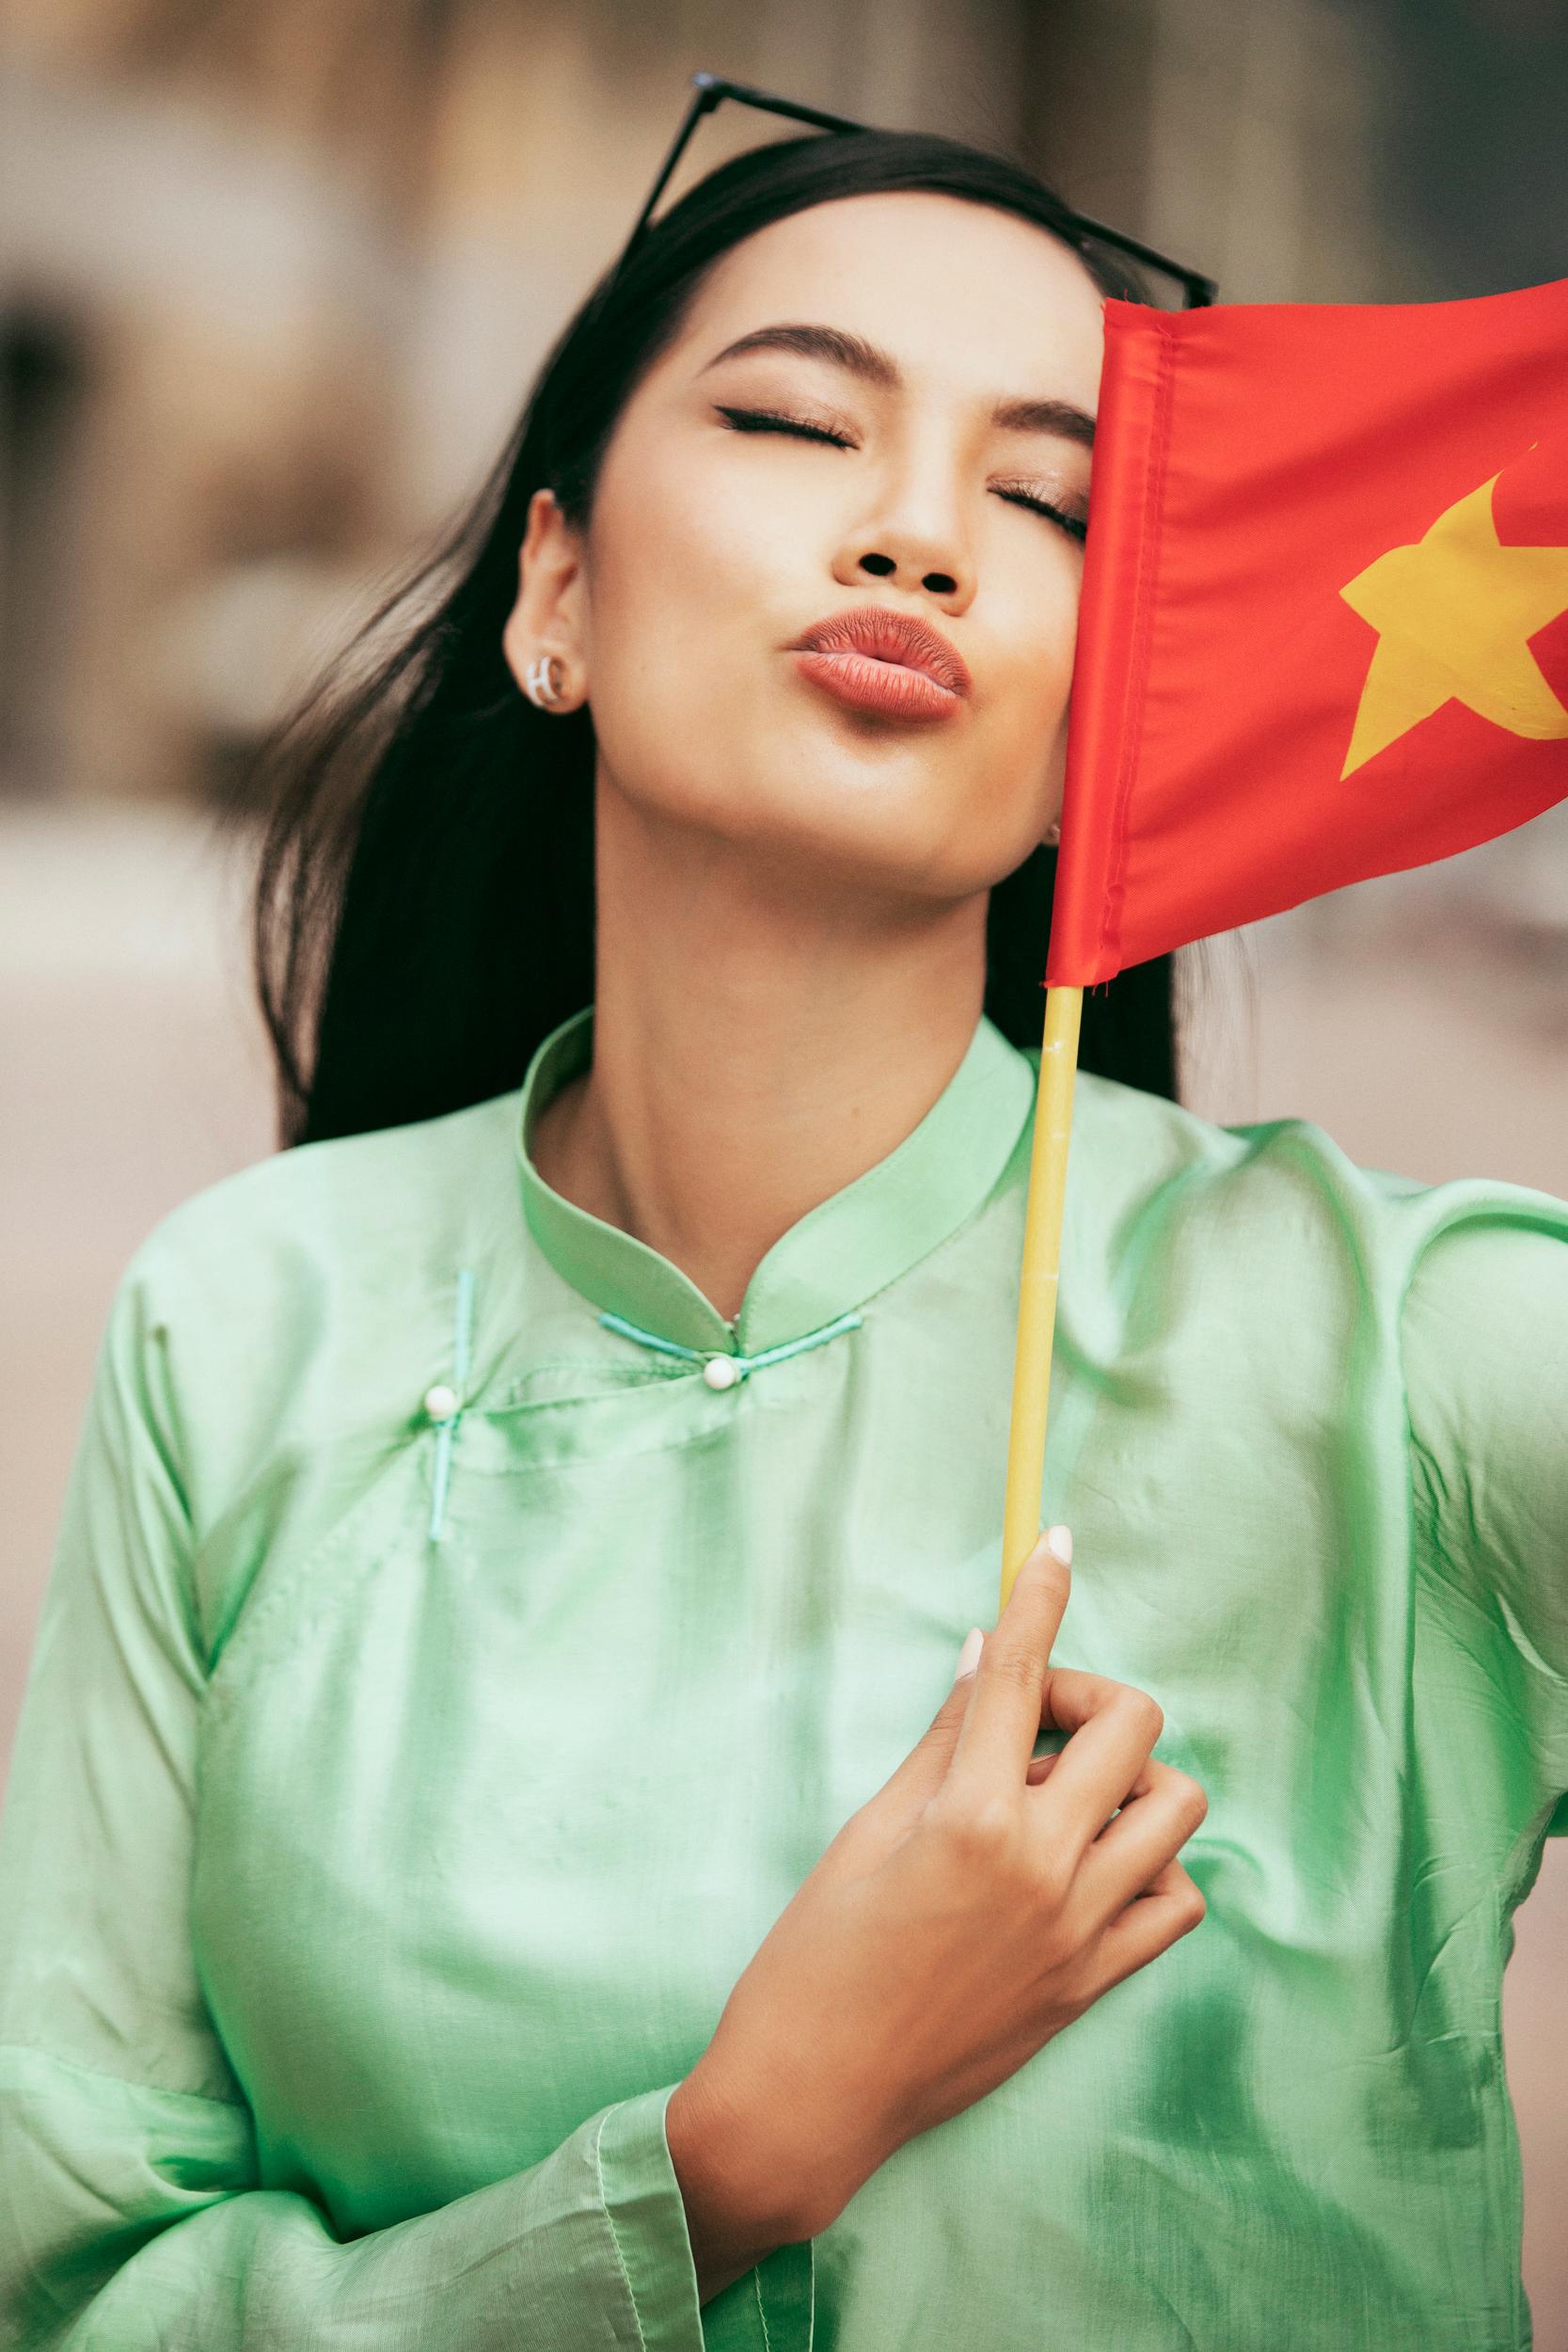 Áo dài lụa Hà Đông là một trong những trang phục truyền thống đẹp và tinh tế của Việt Nam. Với việc người mẫu Việt diện áo dài lụa Hà Đông đi tham quan ở Dubai, hình ảnh này chứng tỏ sự sang trọng và quý phái của áo dài Việt Nam và giới thiệu đến bạn bè quốc tế văn hóa và nét đẹp của Việt Nam.